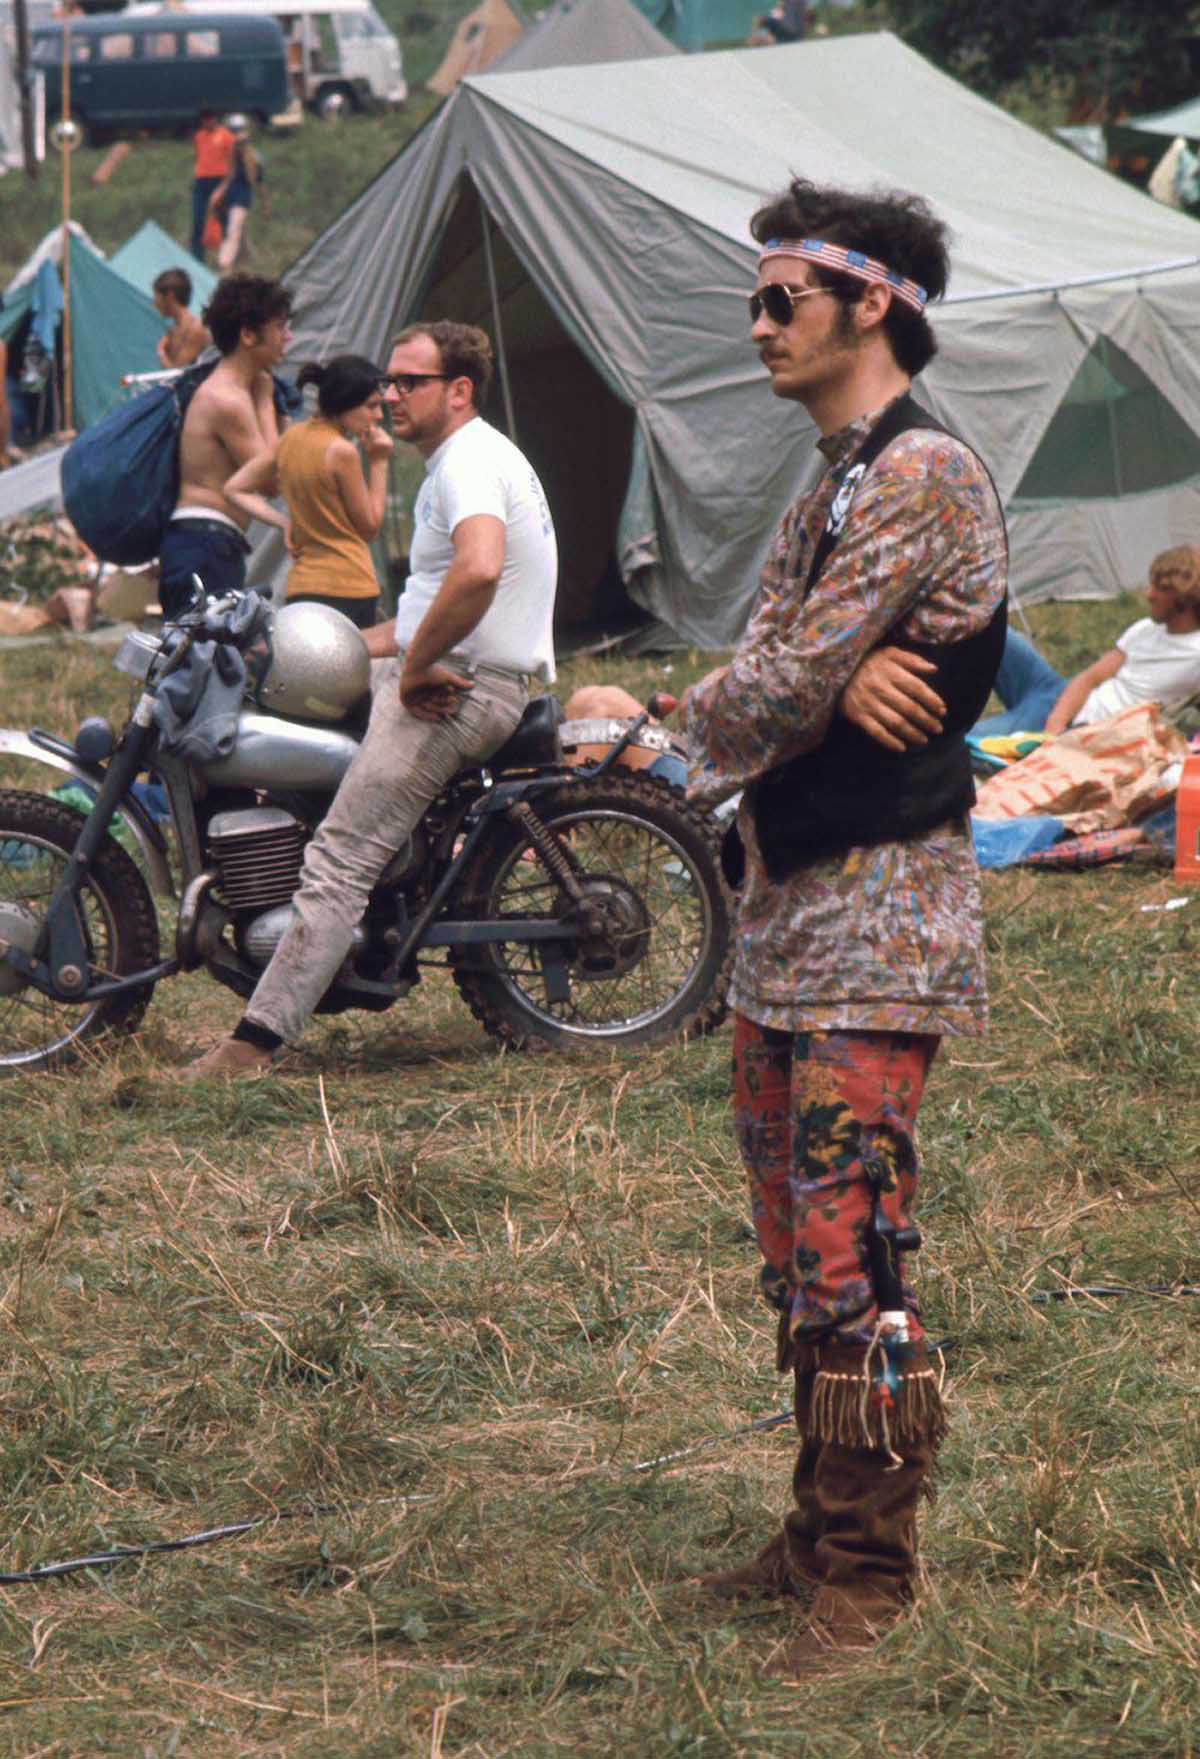 Fotos impressionantes retratam a moda rebelde de Woodstock em 1969 15